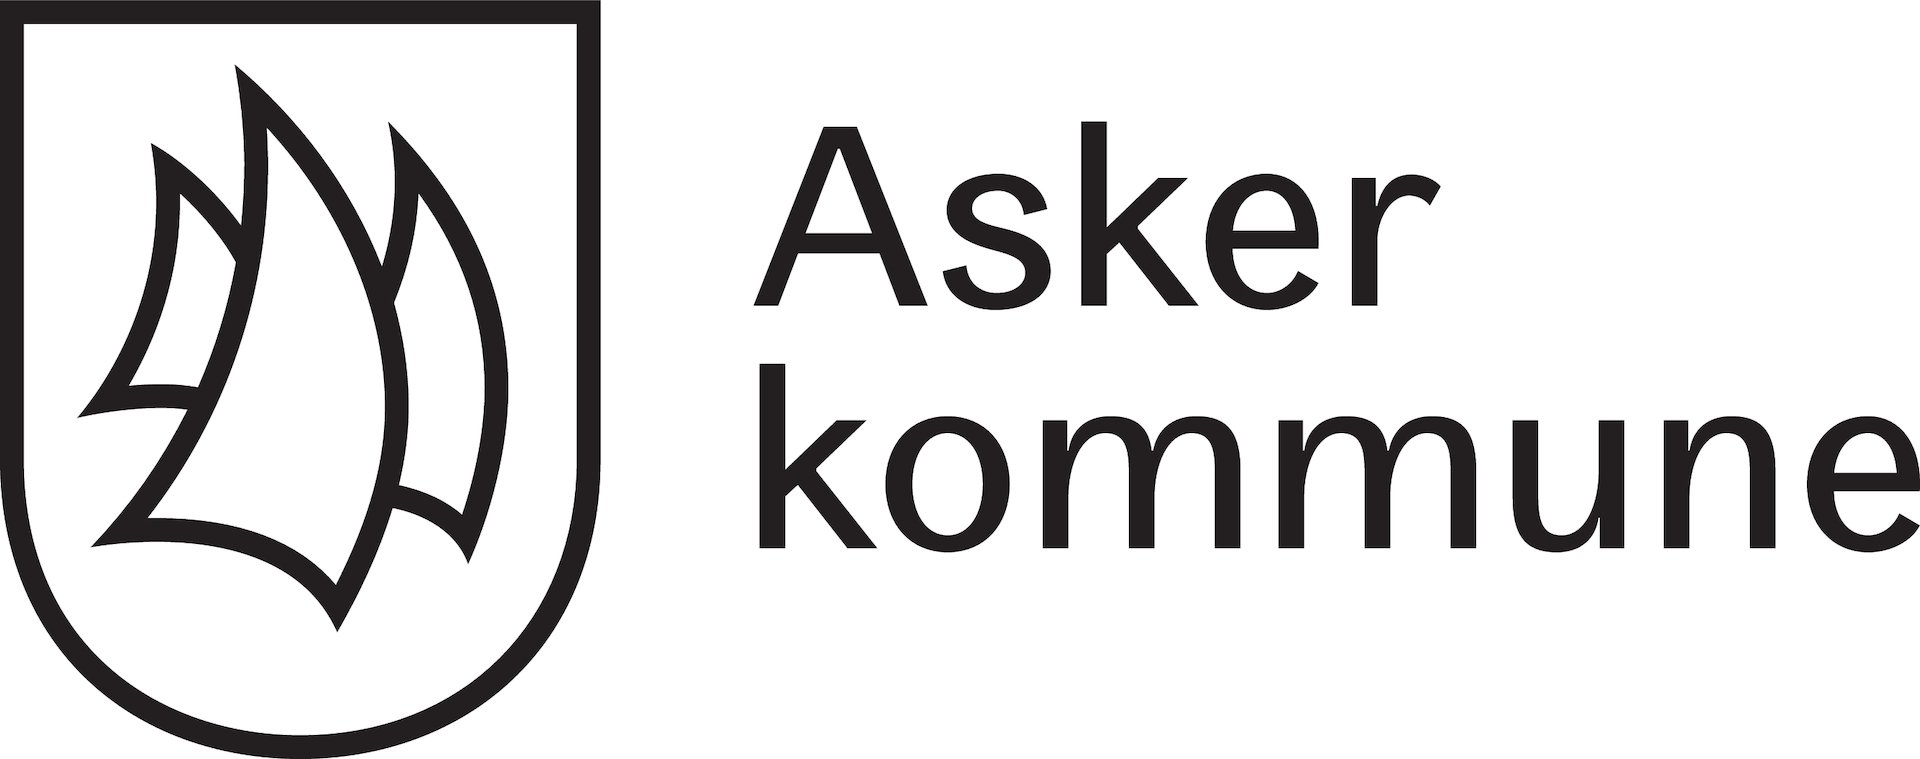 Asker-kommune_logo_stilisert_cmyk_190611.jpg